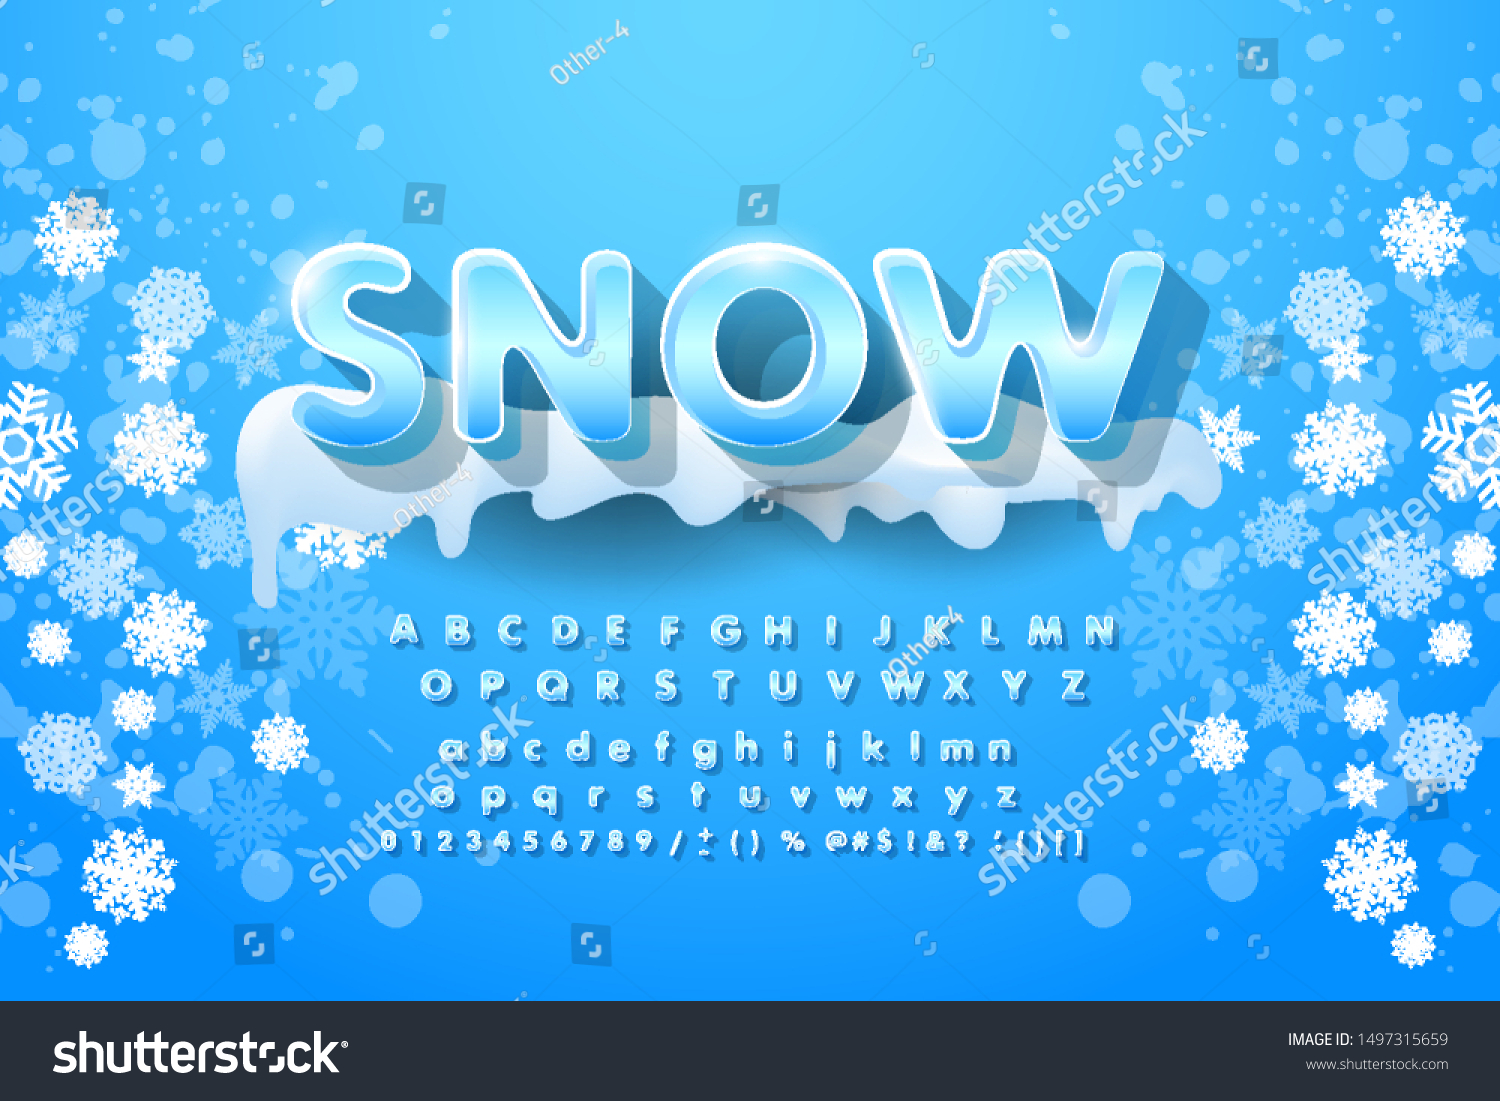 冬のベクター画像アルファベットと雪 文字abc 氷の寒いフォント 季節の霜のフォント タイポグラフィー またはタイプセット 冬のアルファベットのベクター イラスト のベクター画像素材 ロイヤリティフリー Shutterstock